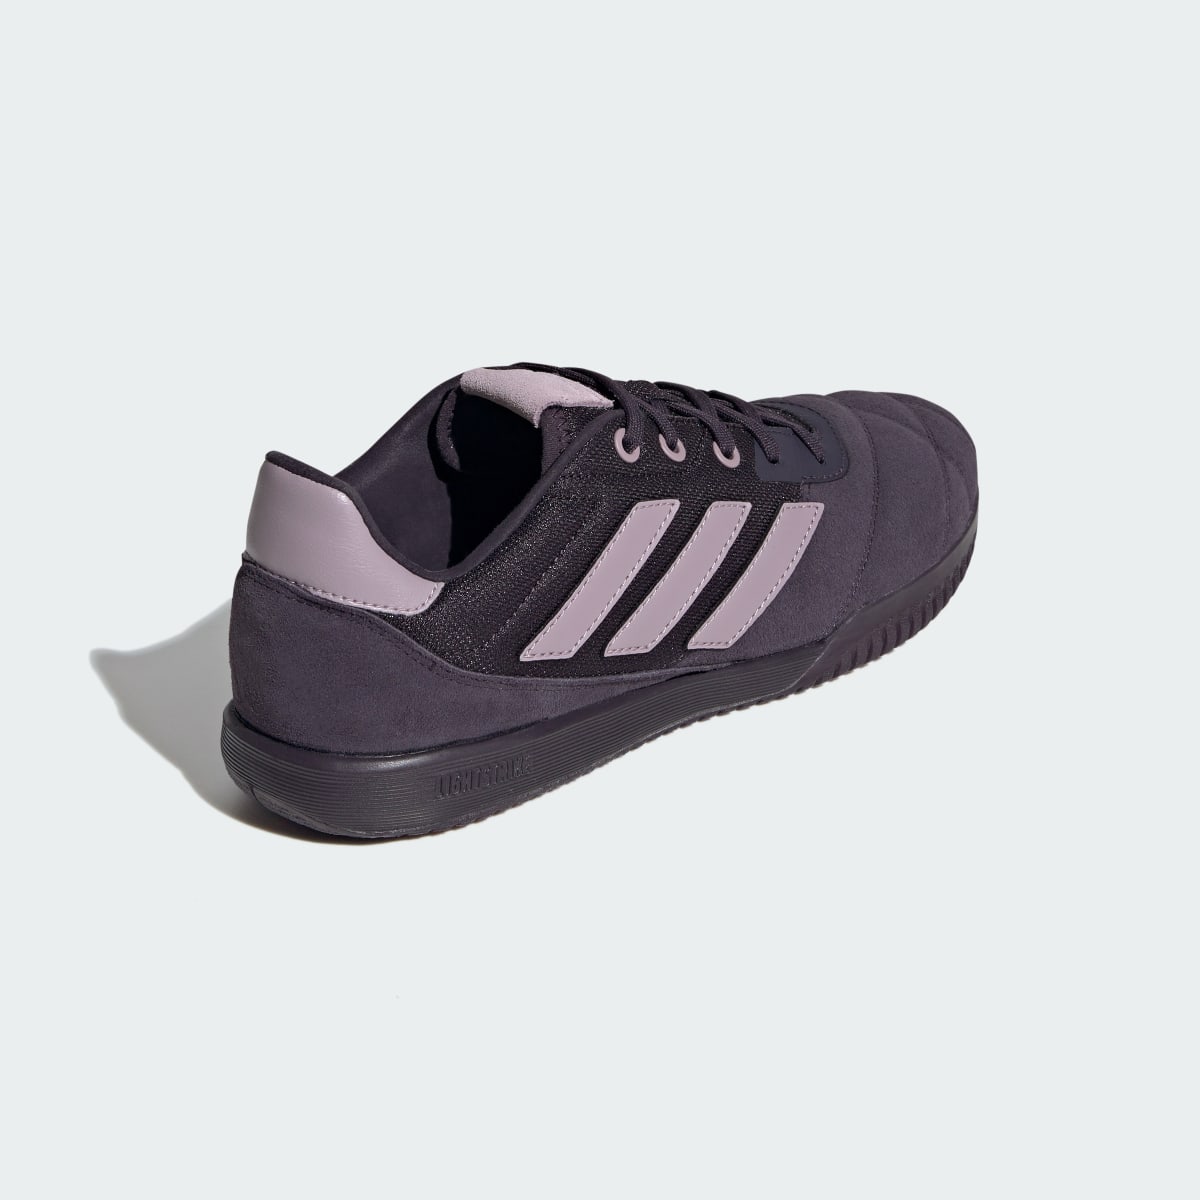 Adidas Copa Gloro Indoor Boots. 6